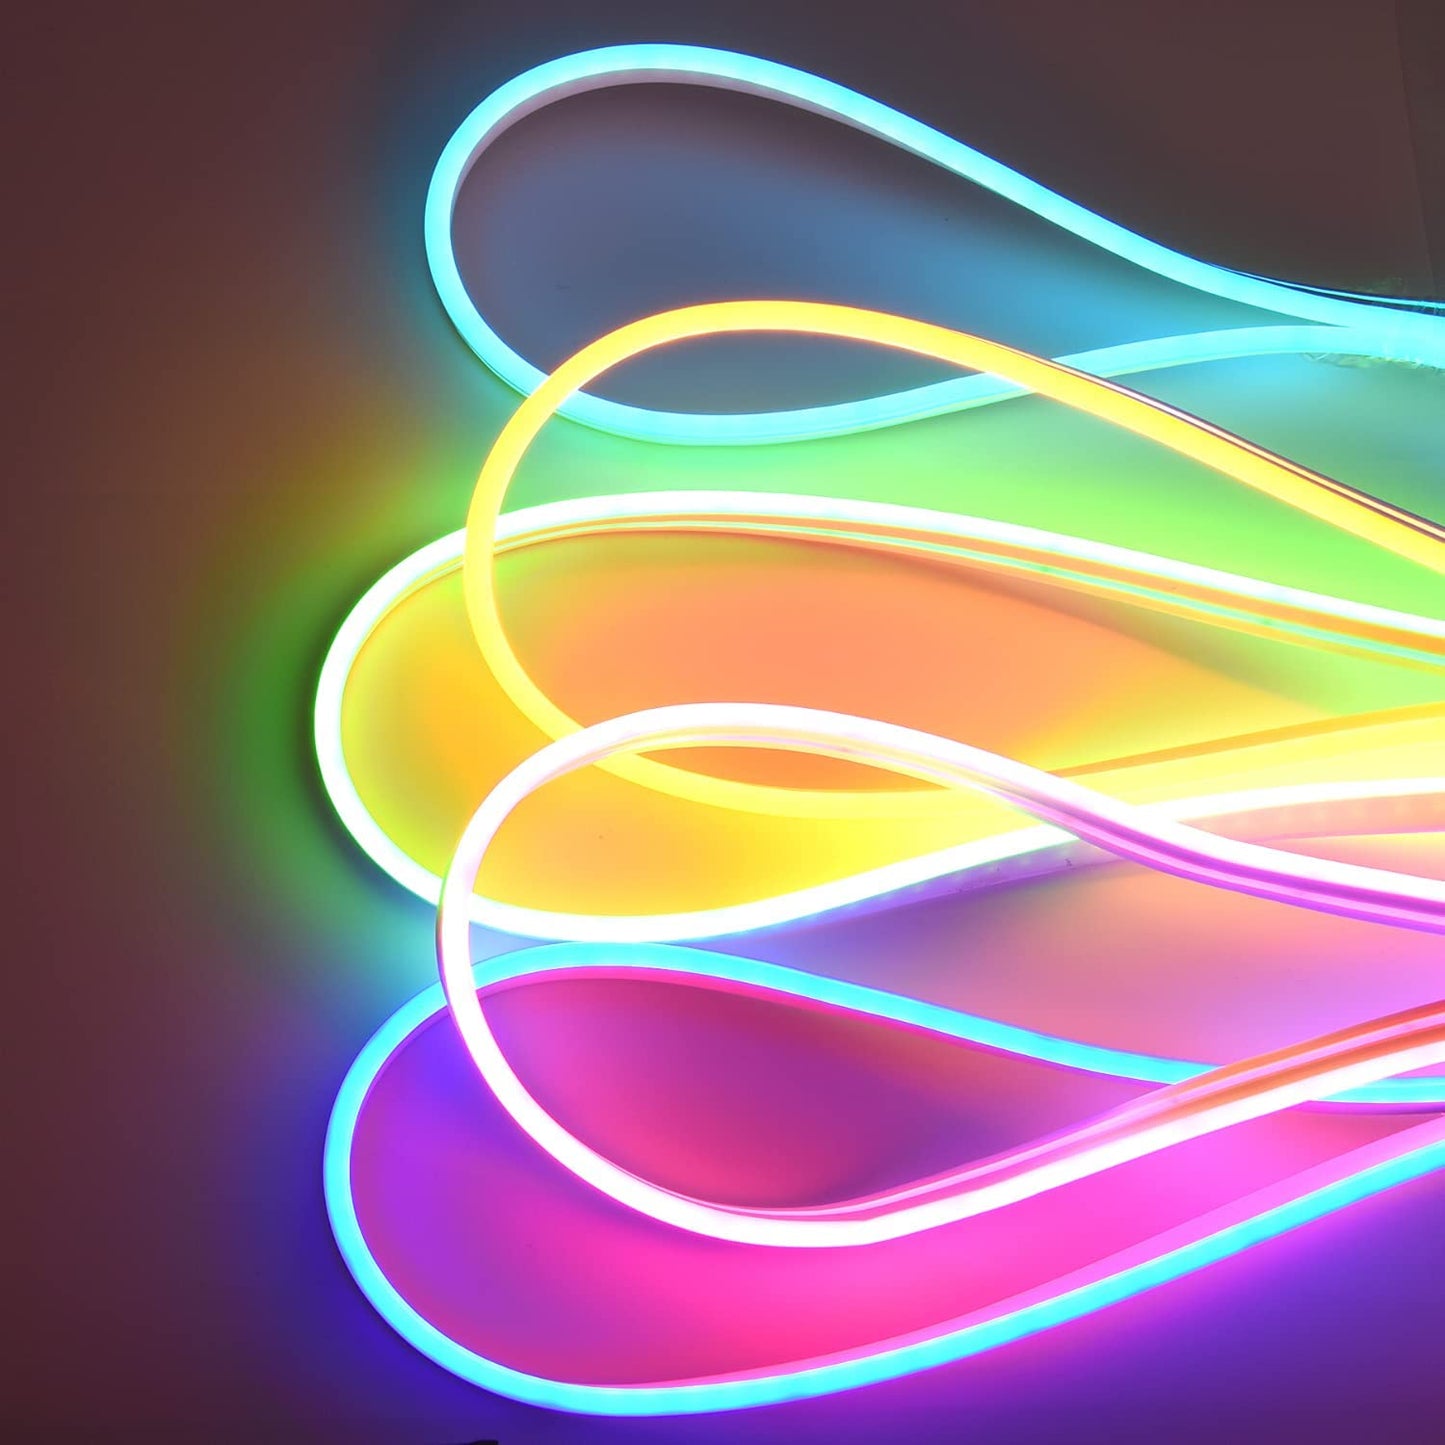 NUOVA GERMANY Striscia Neon LED Silicone Impermeabile IP67 10W/M Alta luminosà per decorazione interna ed esterna Cartello, Insegna, Giardino, Studio, Stanza gaming DC24V